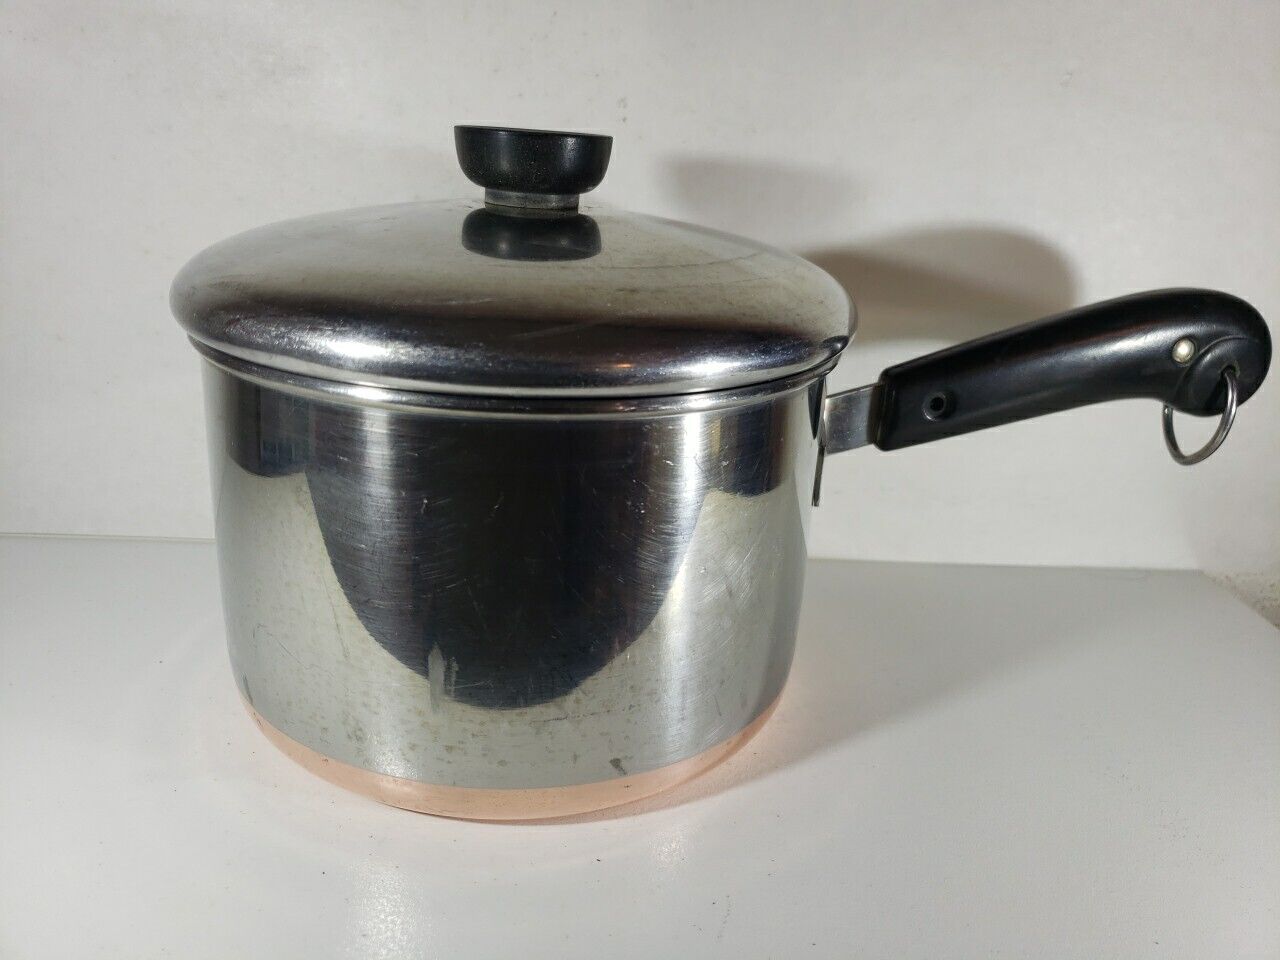 Vintage Revere Ware 2 Quart Sauce Pan Copper Bottom Patent Under Process 1948-68